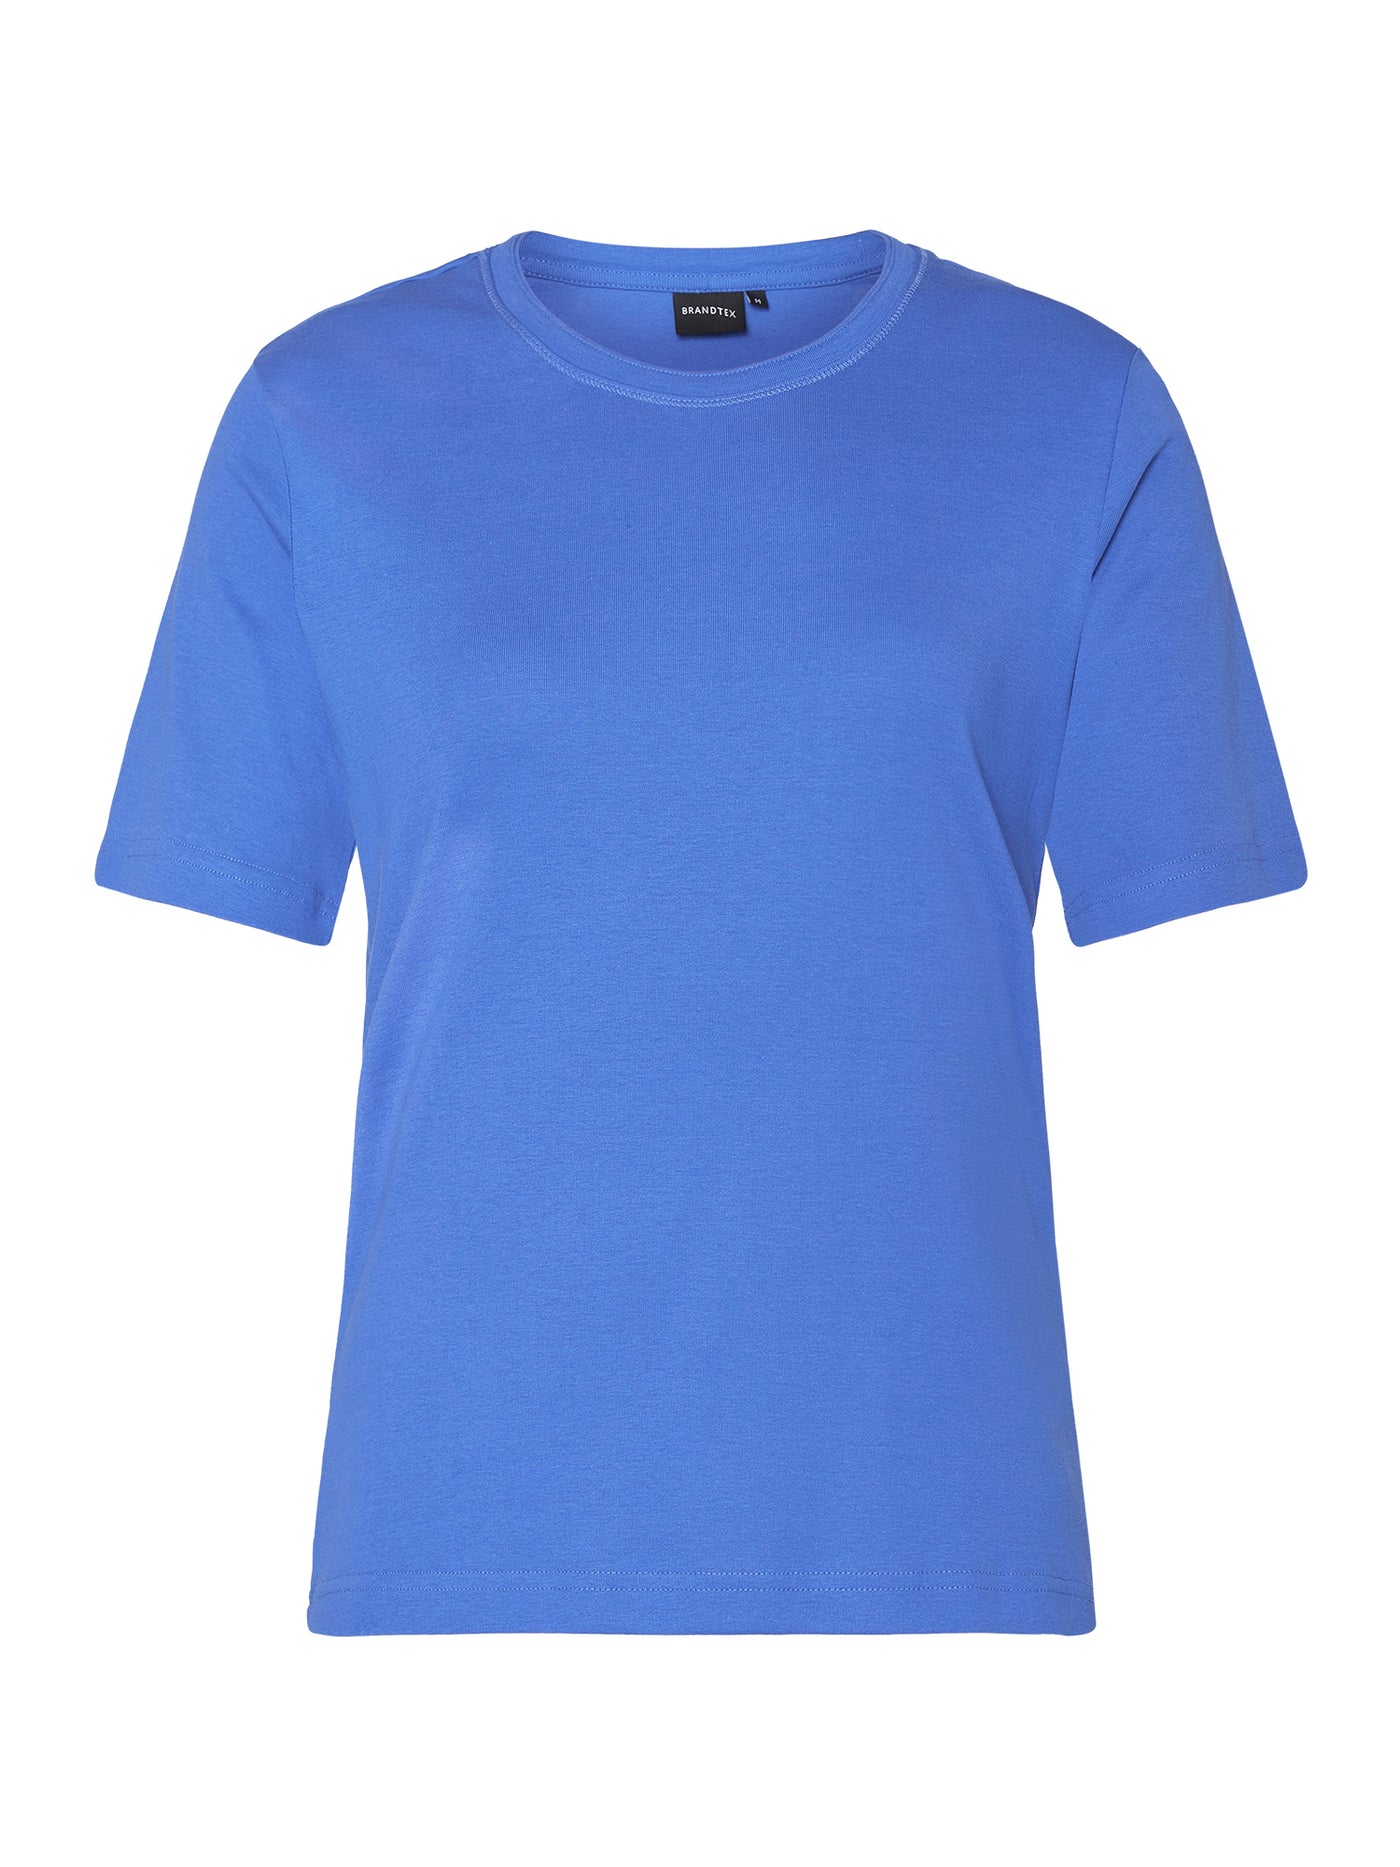 T-shirt -  Blå